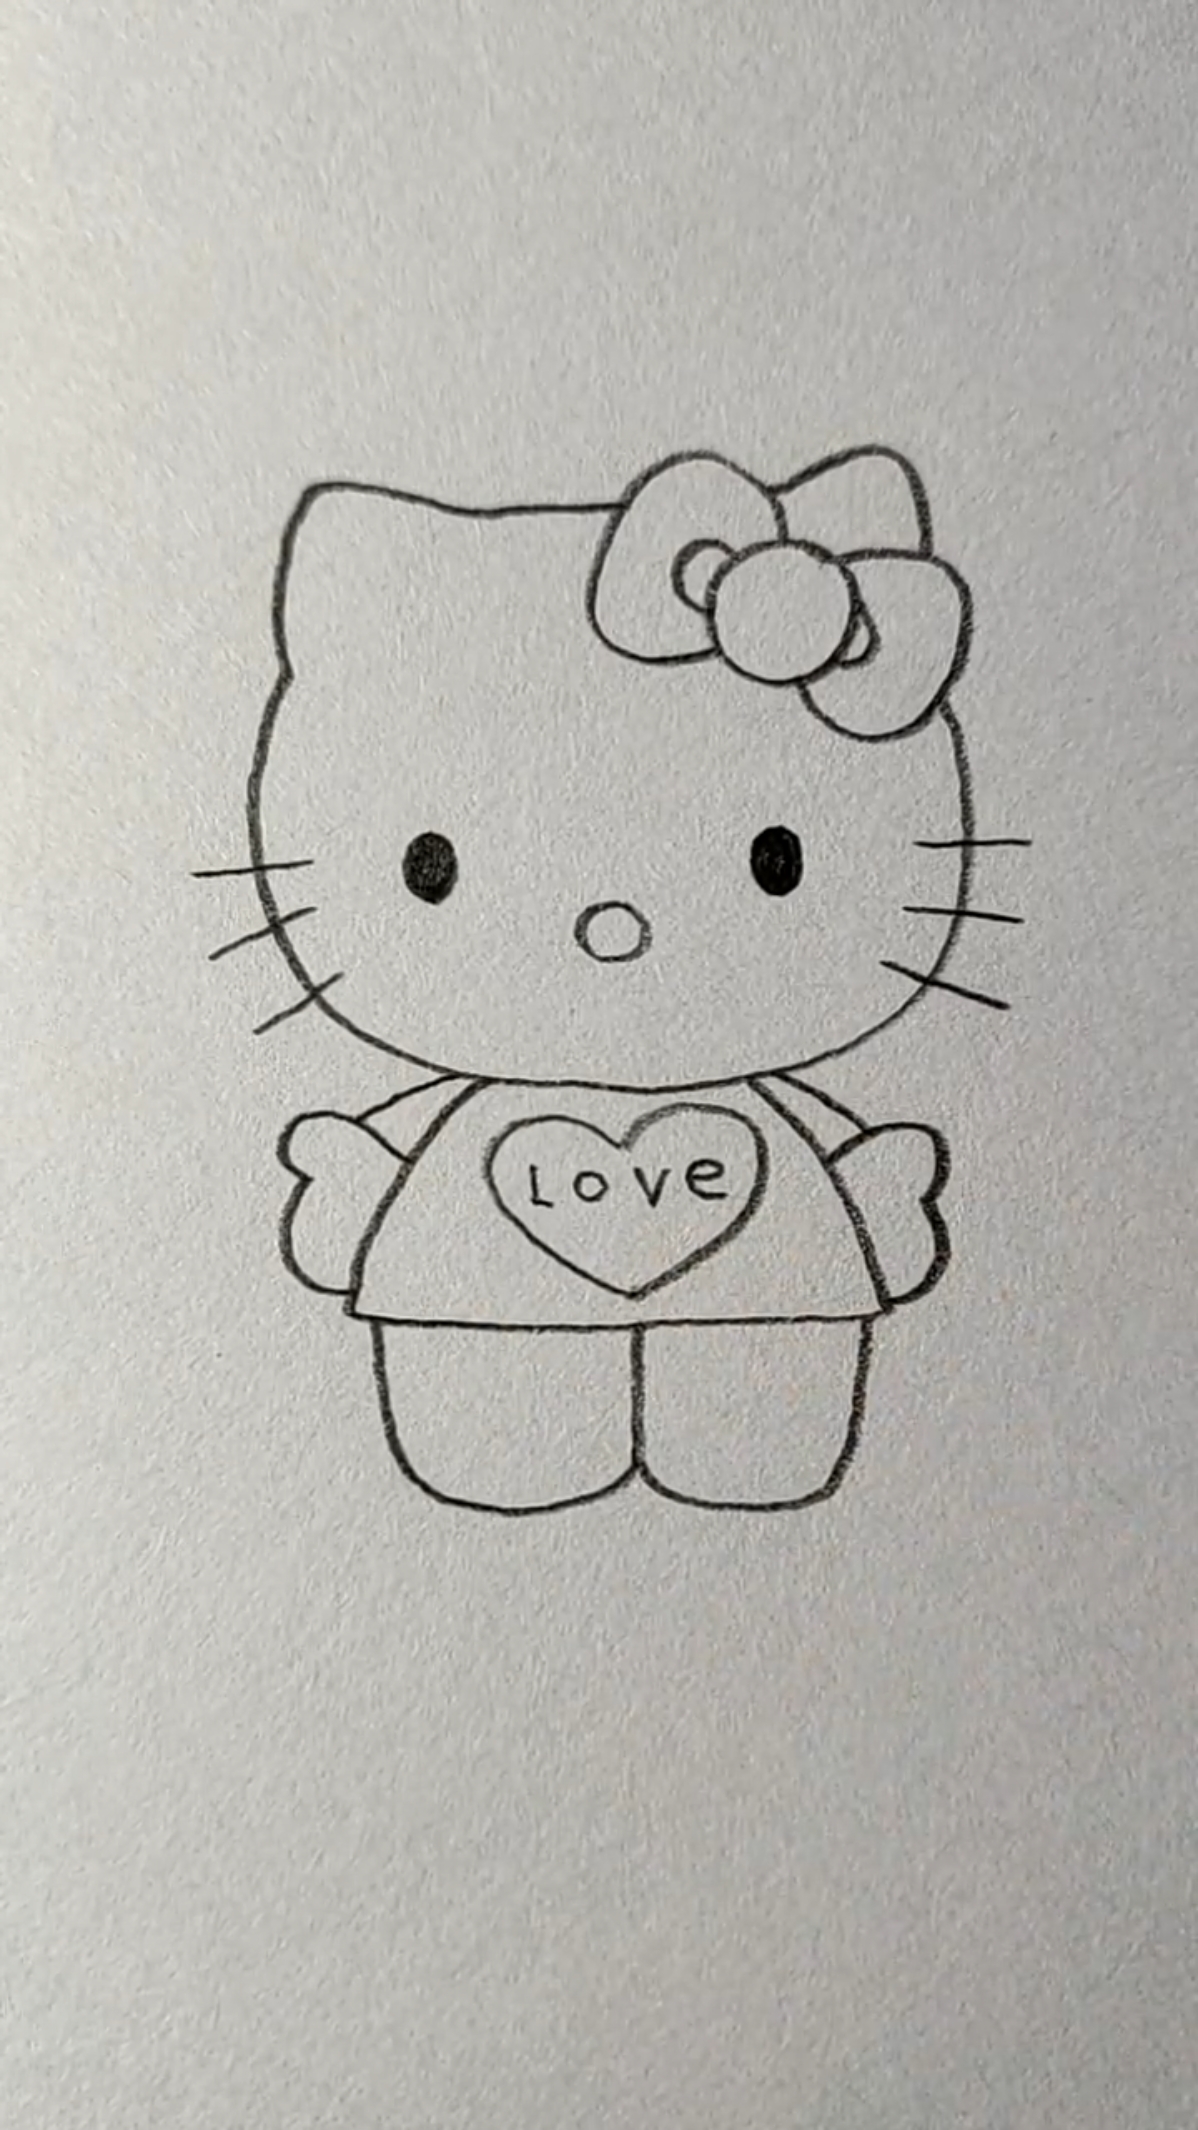 简笔画画一只凯蒂猫,以前上学的时候连作业本都要买凯蒂猫的呢